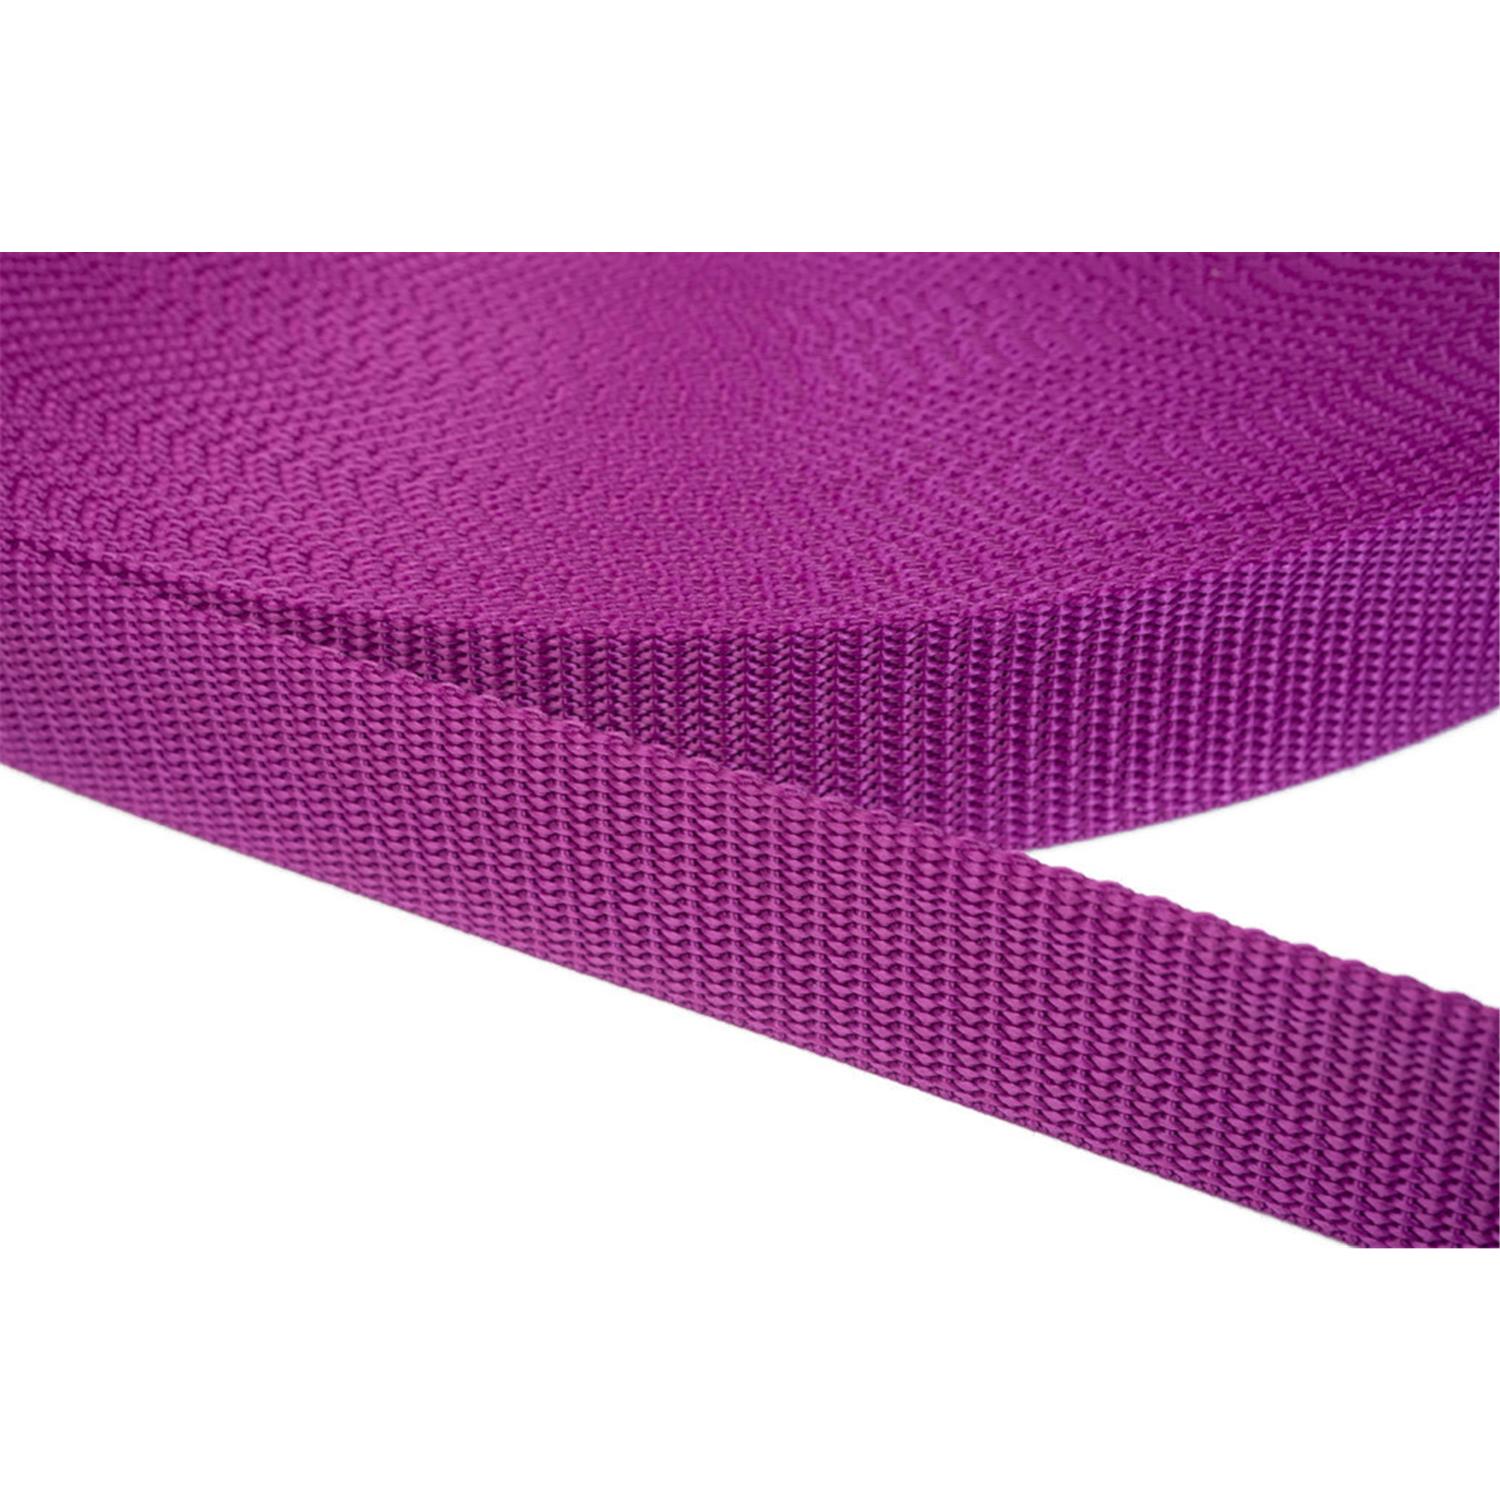 Gurtband 30mm breit aus Polypropylen in 41 Farben 22 - violettrot 50 Meter